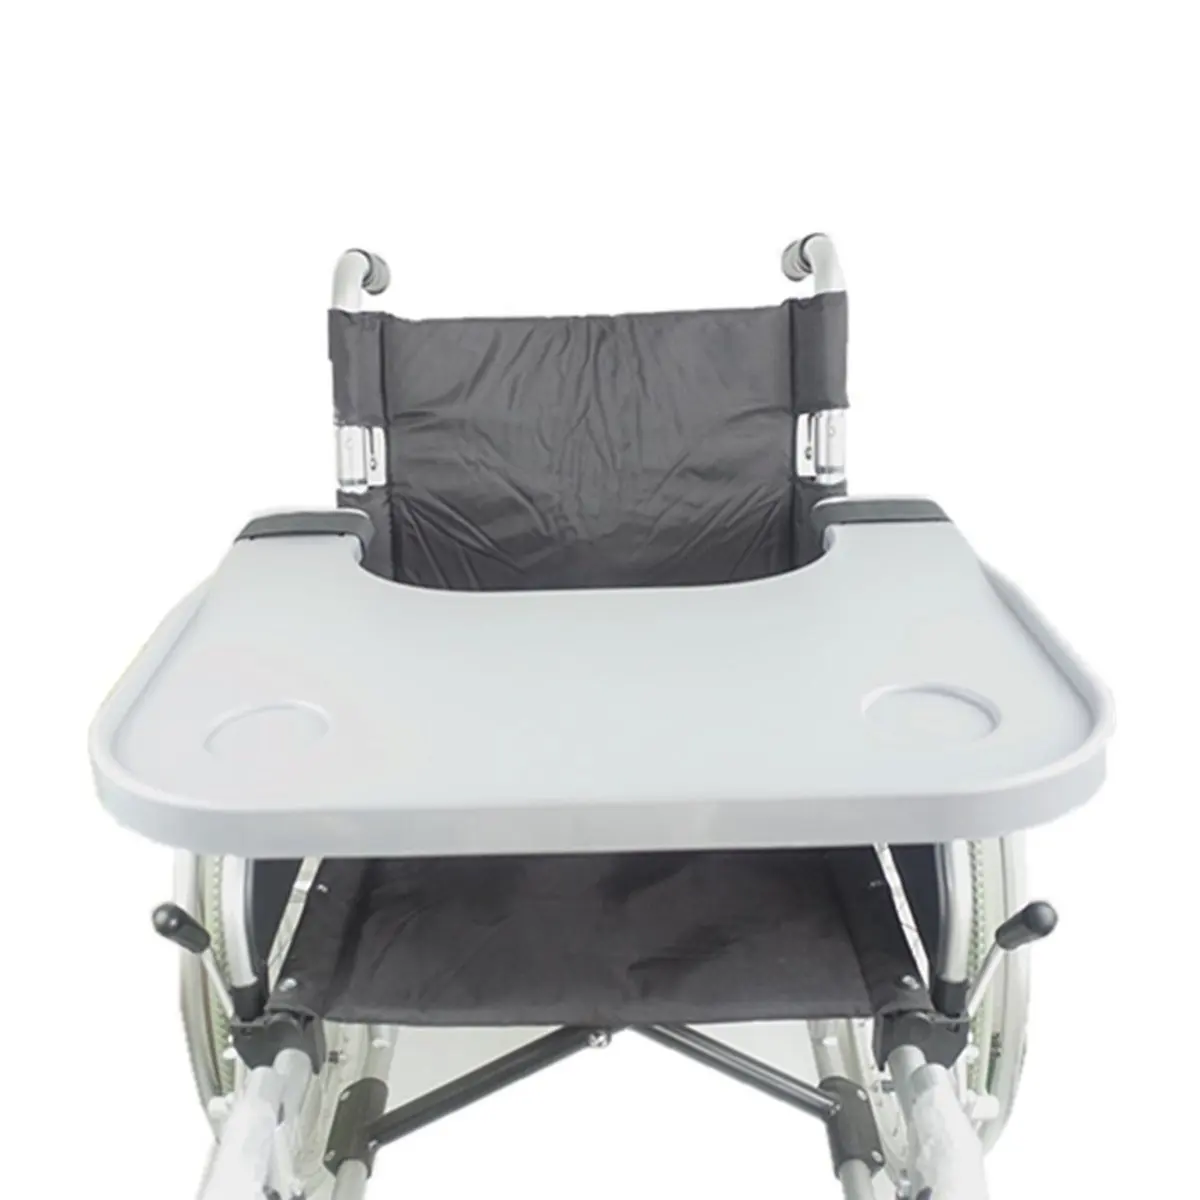 Портативный ABS поднос для инвалидных колясок стол 2 держатель чашки Lap еда стол для чтения кормящих дома стенд счетчик аксессуары для инвалидных колясок